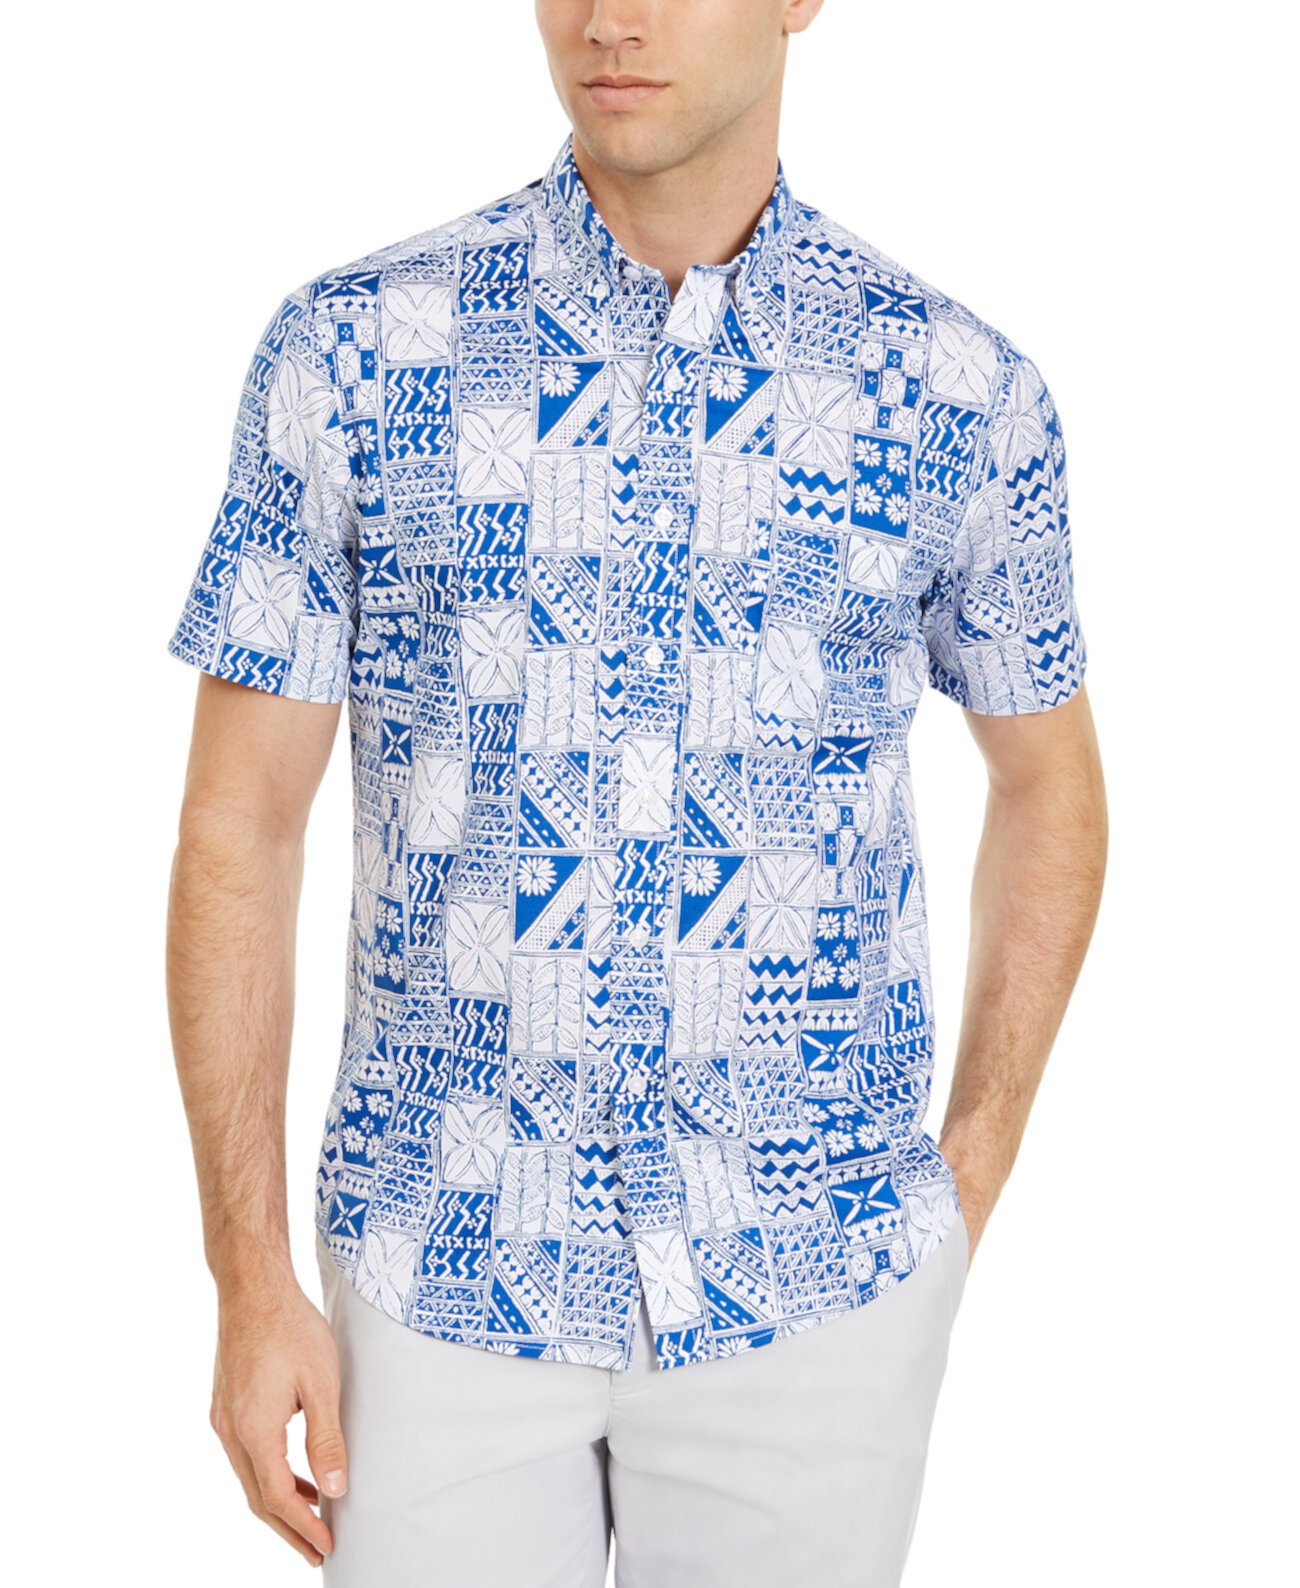 Мужская рубашка с лоскутным принтом, созданная для Macy's Club Room